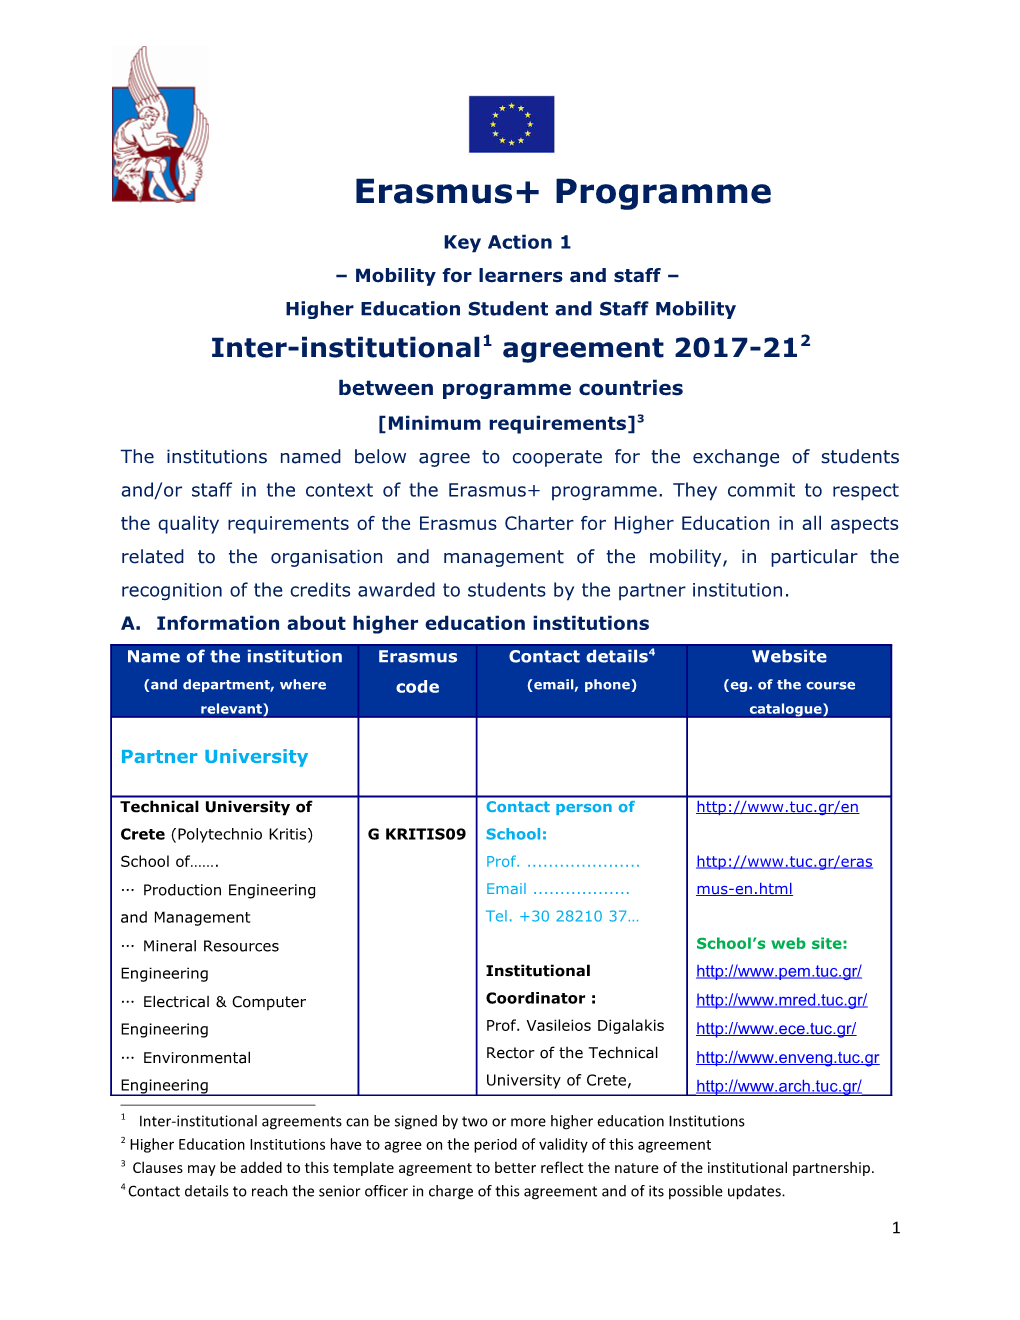 Erasmus+ Programme s6